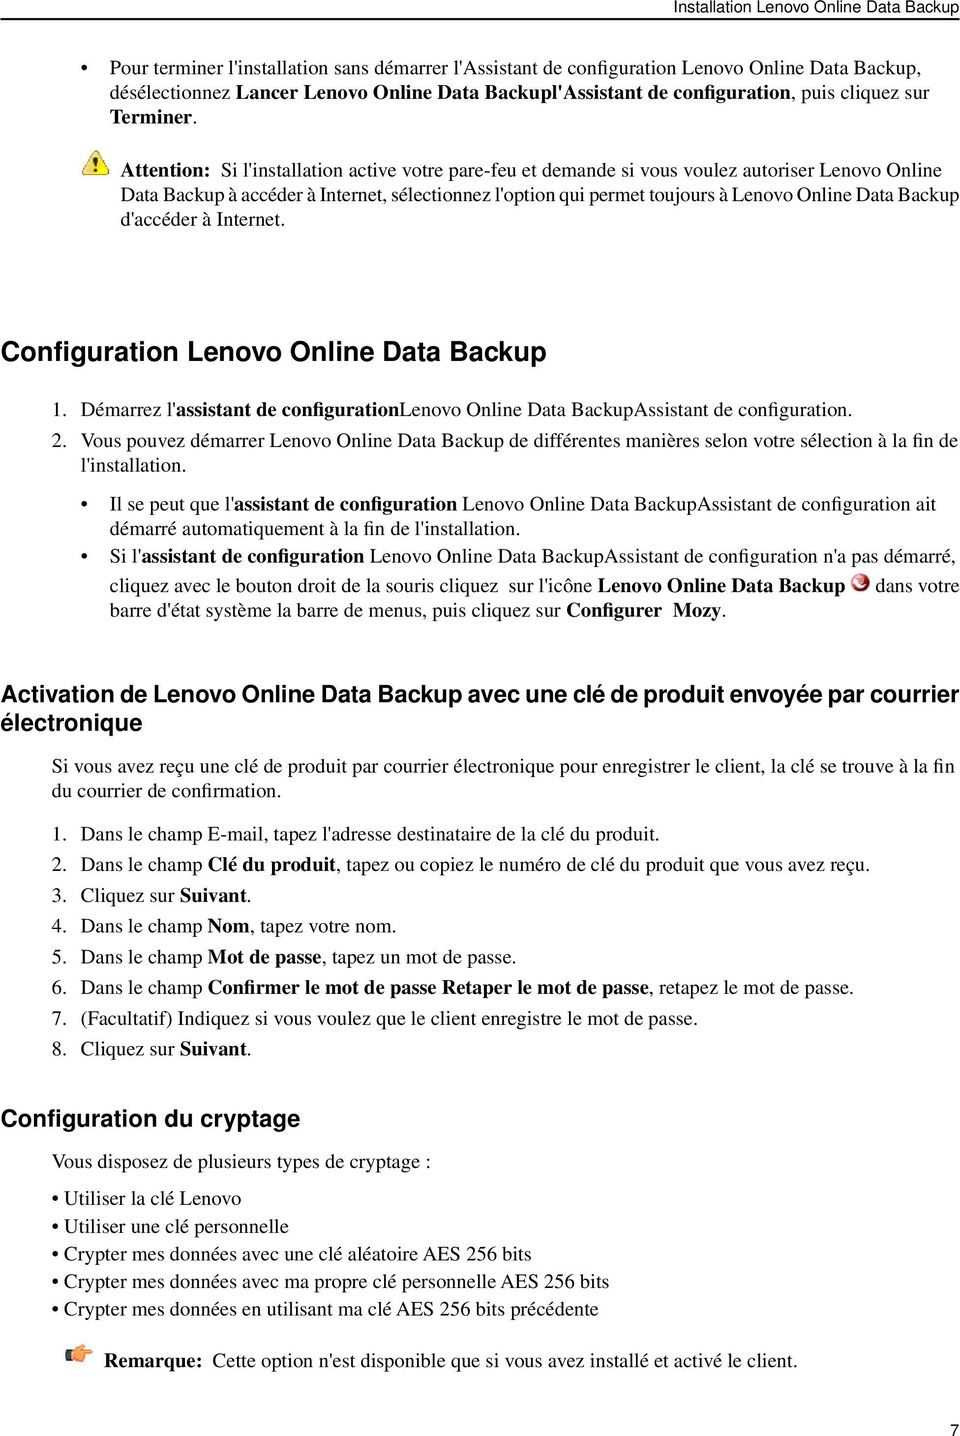 Attention: Si l'installation active votre pare-feu et demande si vous voulez autoriser Lenovo Online Data Backup à accéder à Internet, sélectionnez l'option qui permet toujours à Lenovo Online Data